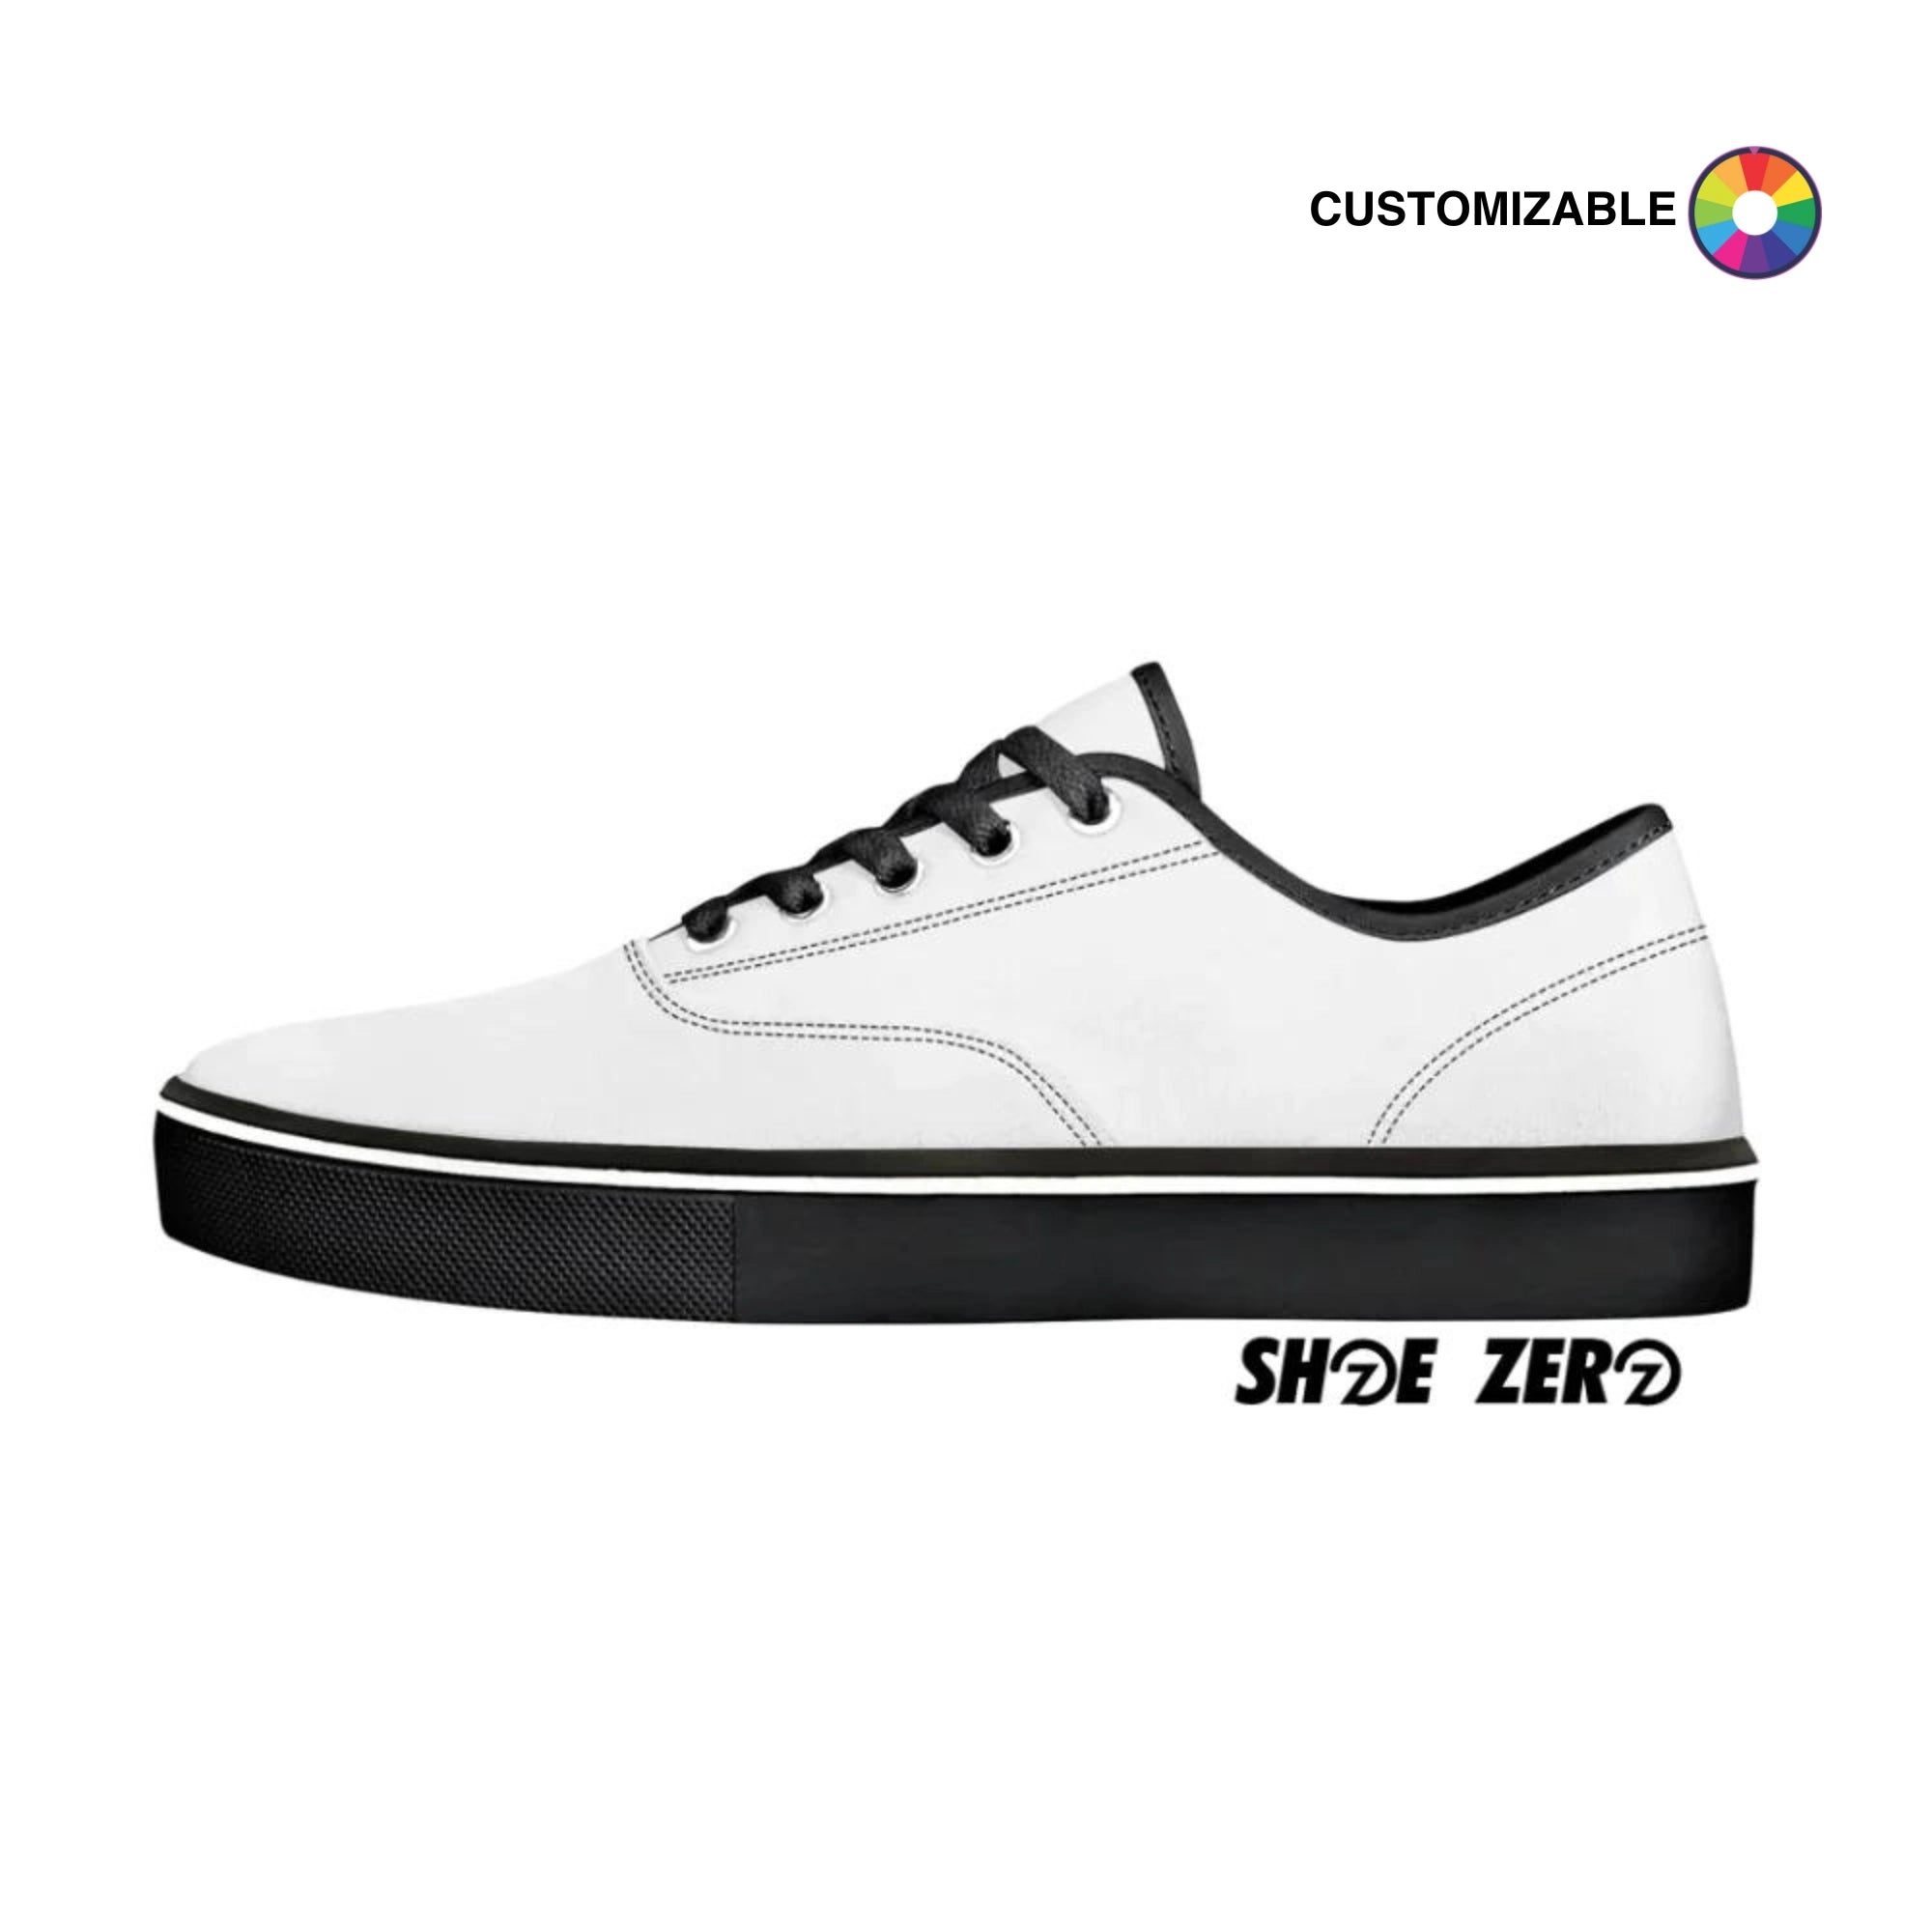 Customizable Skate Shoe - Black